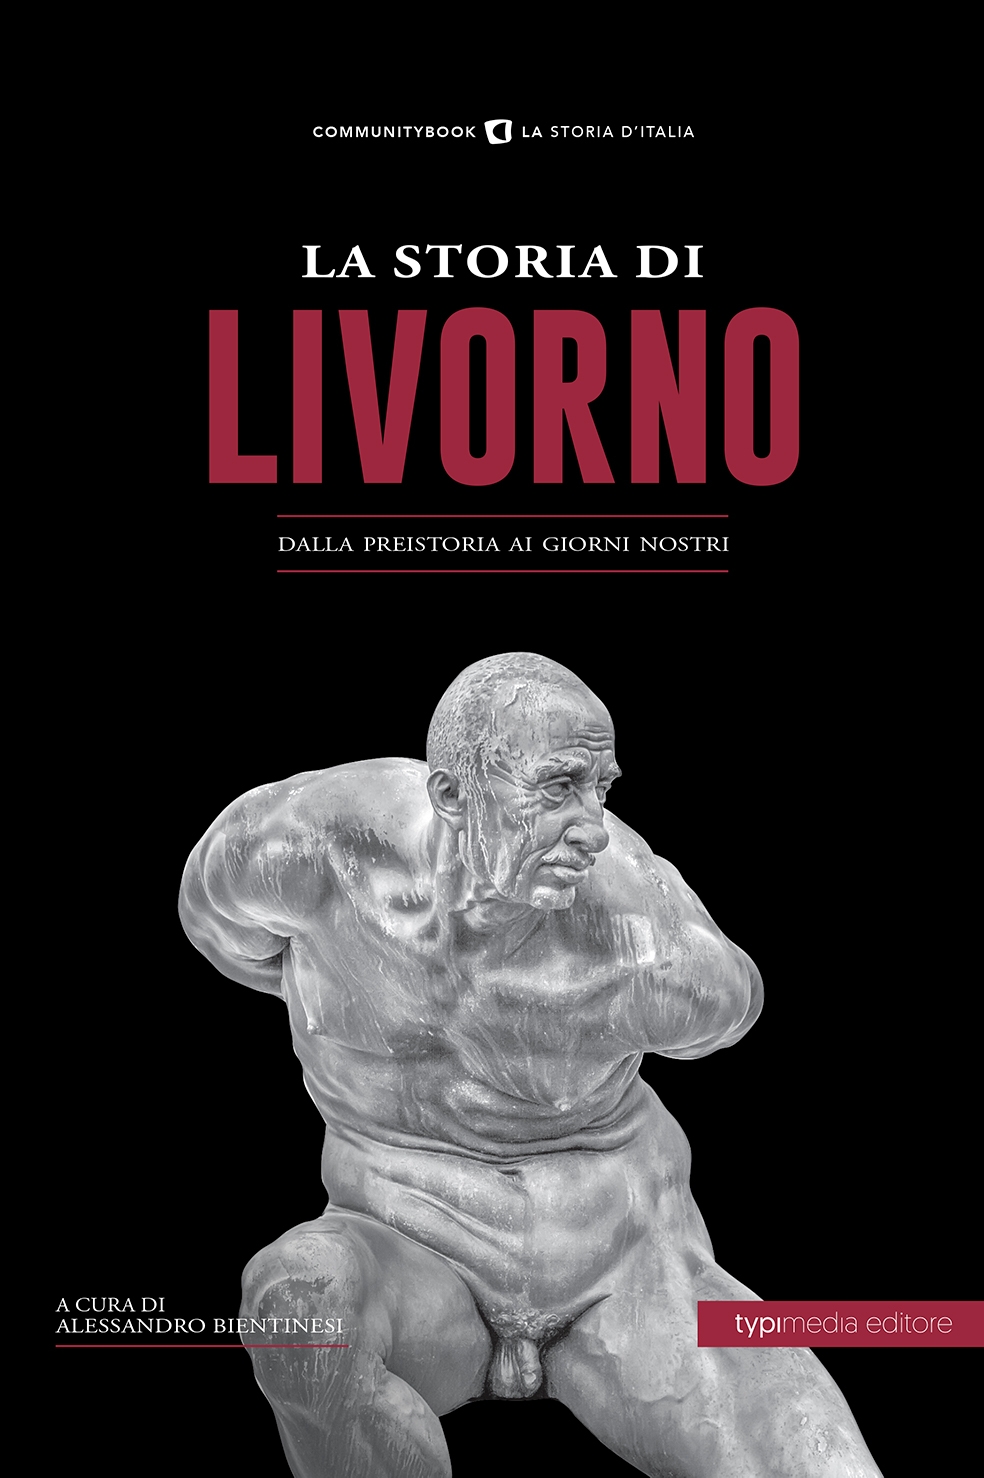 La storia di Livorno, dalla preistoria ai giorni nostri